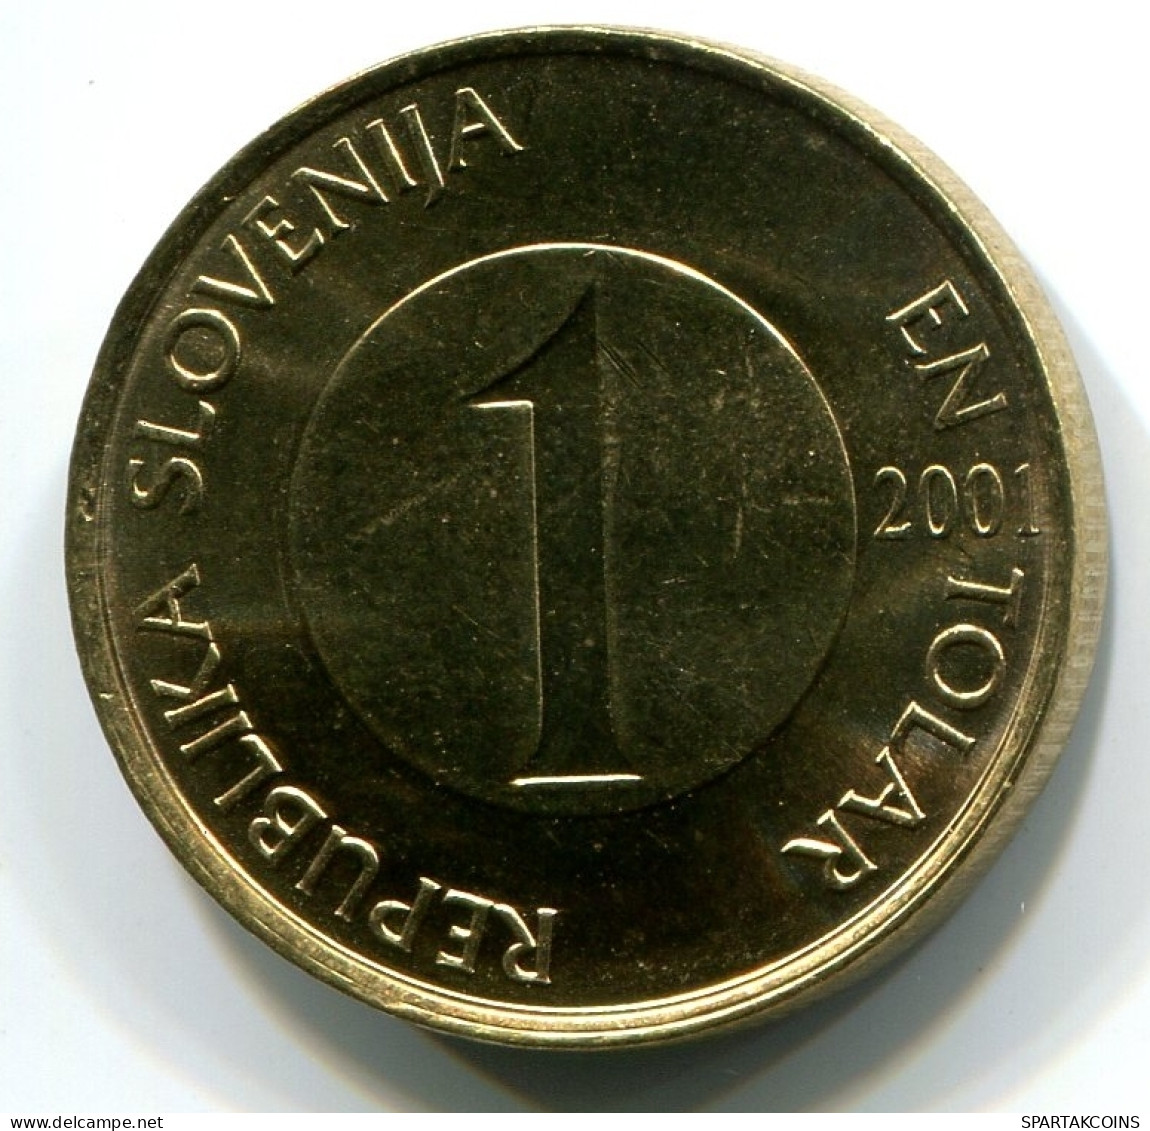 1 TOLAR 2001 SLOWENIEN SLOVENIA UNC Fish Münze #W11048.D - Slovenië